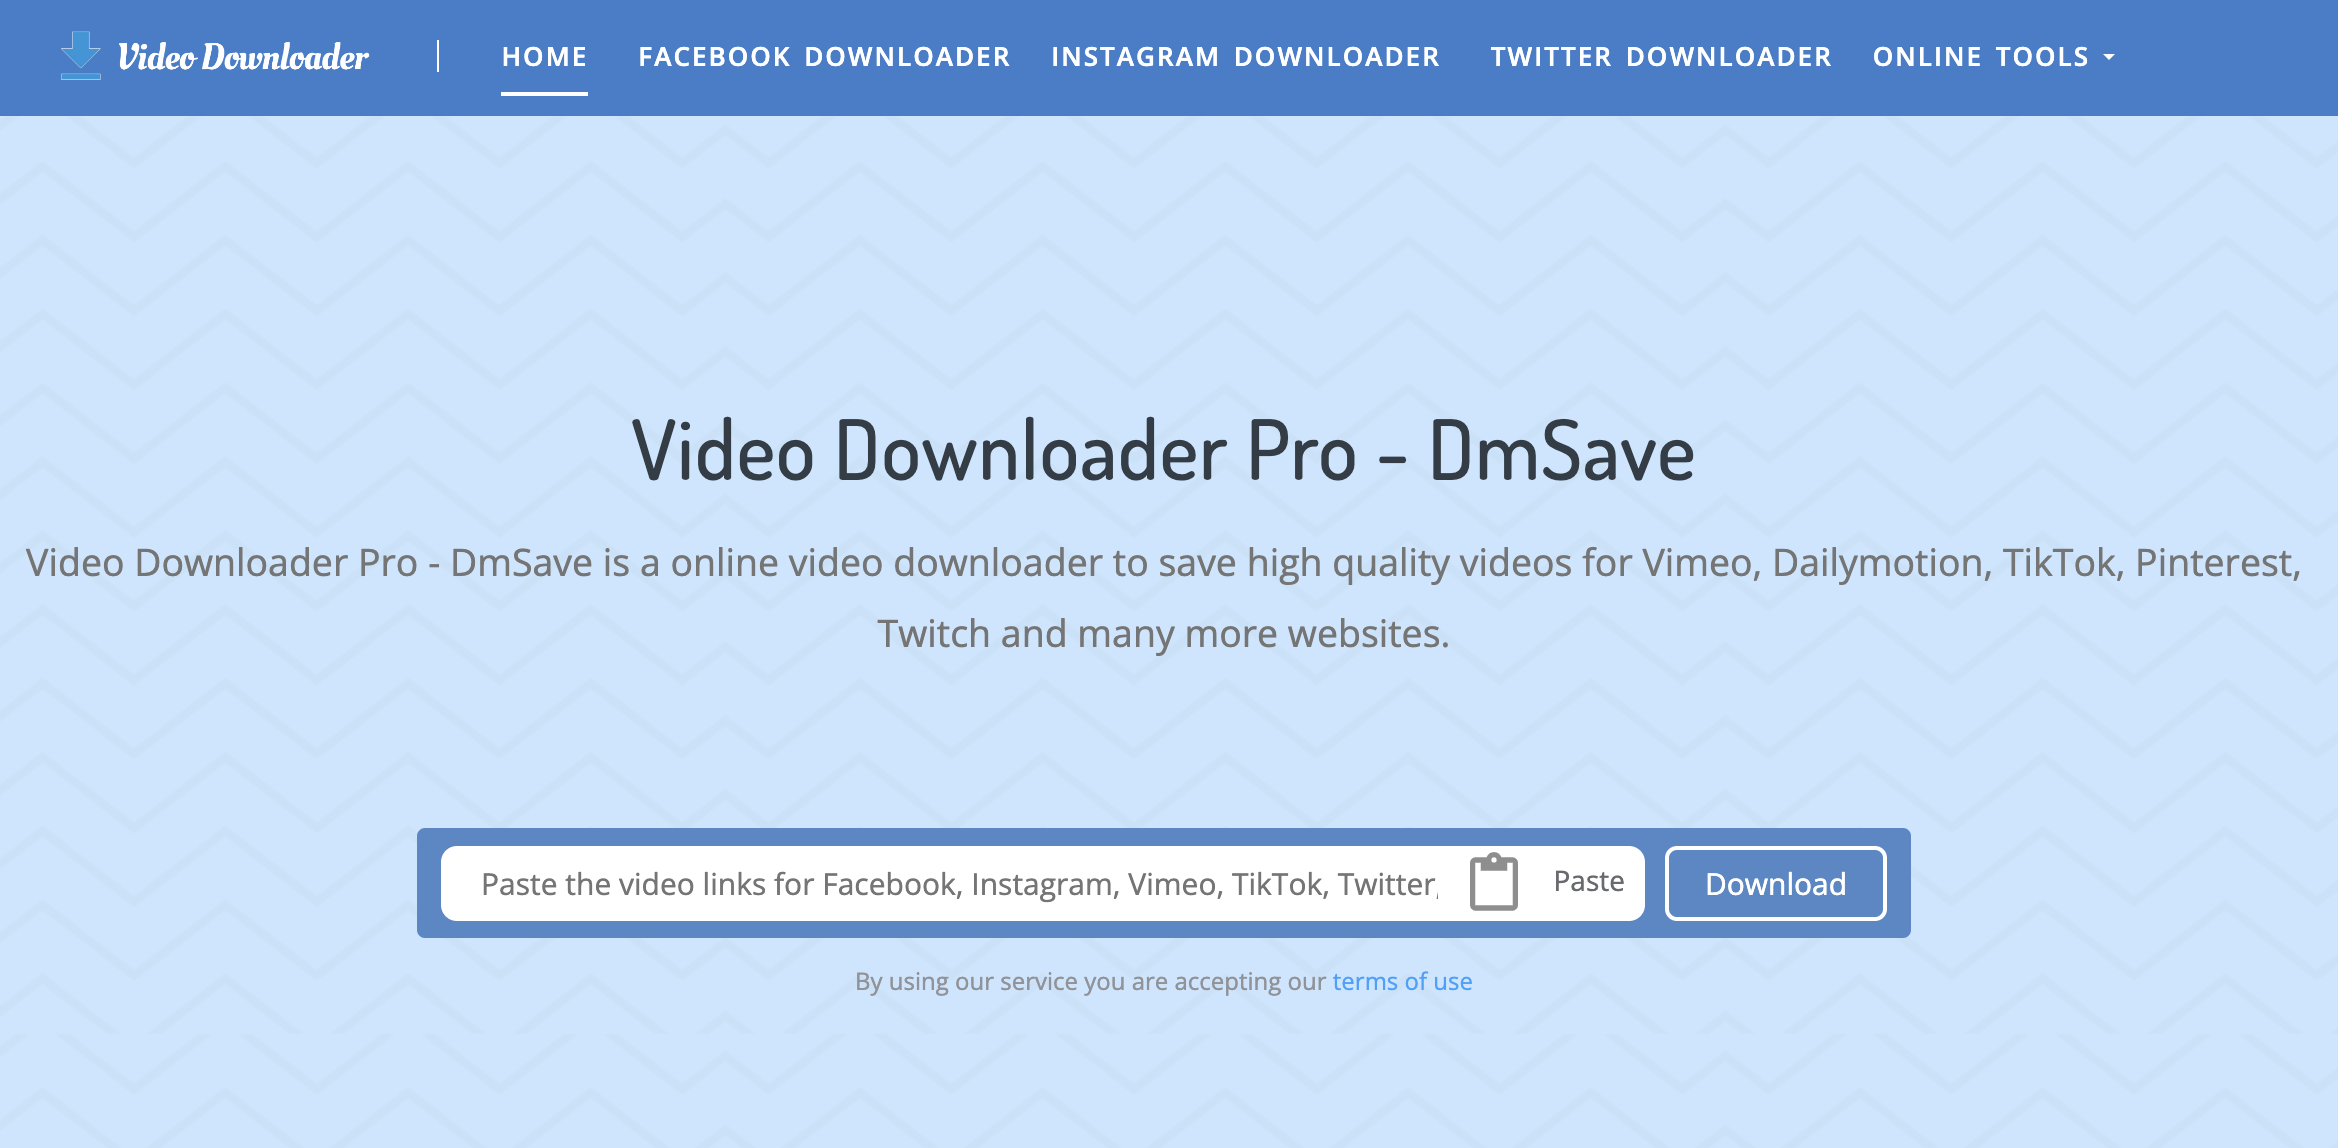 Video Downloader Pro - DmSave